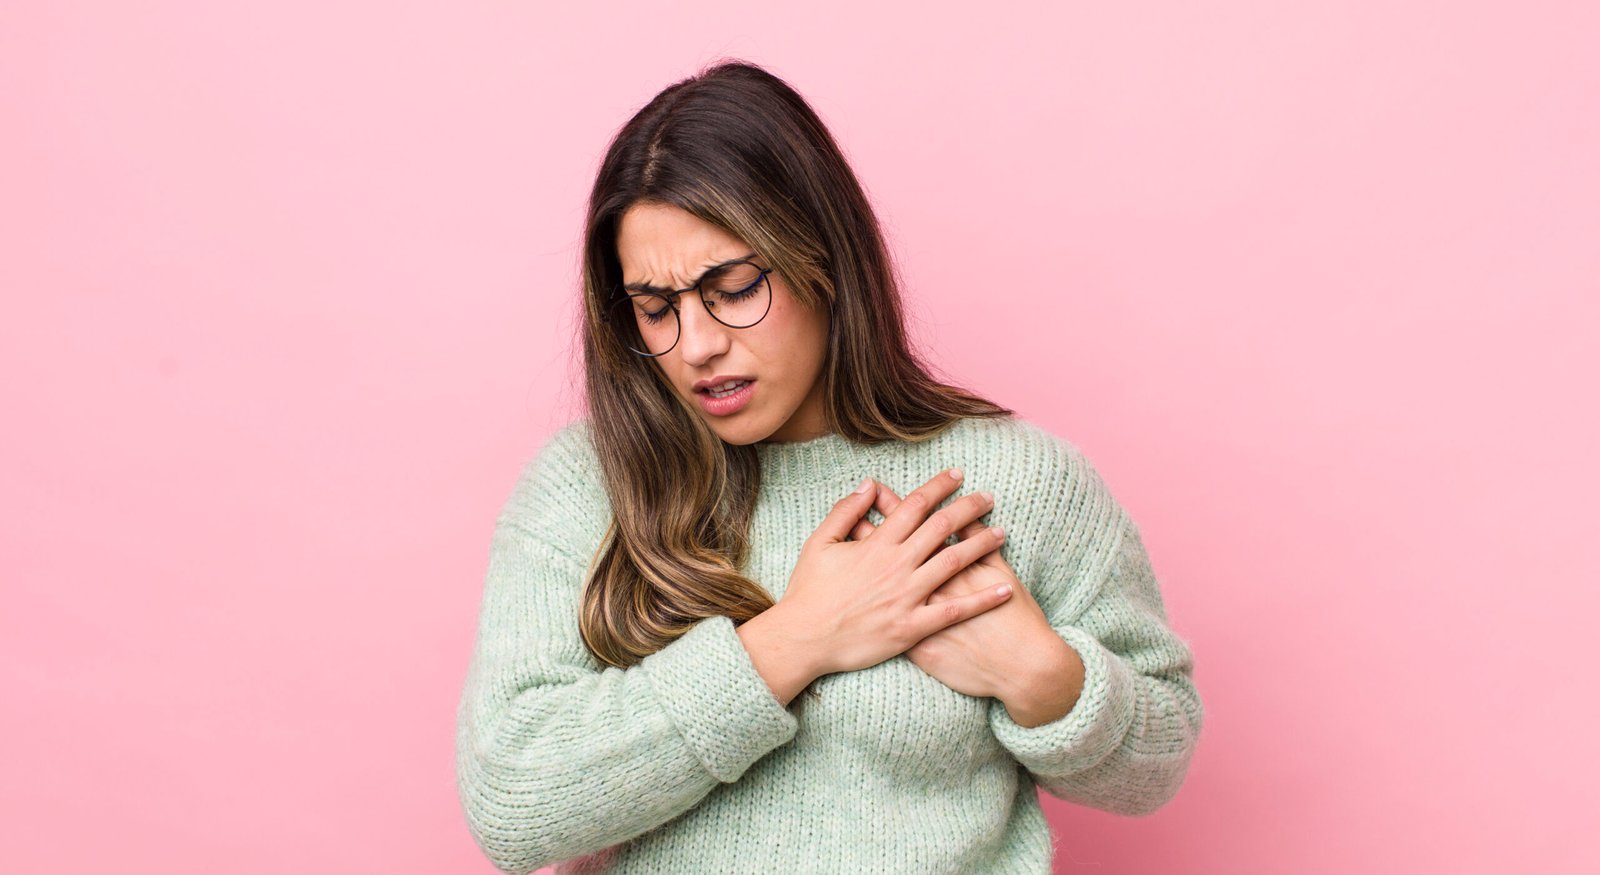 Fotografia de mulher com as duas mãos no peito, sintoma comum de infarto. O infarto está entre as causas da mão dormente.